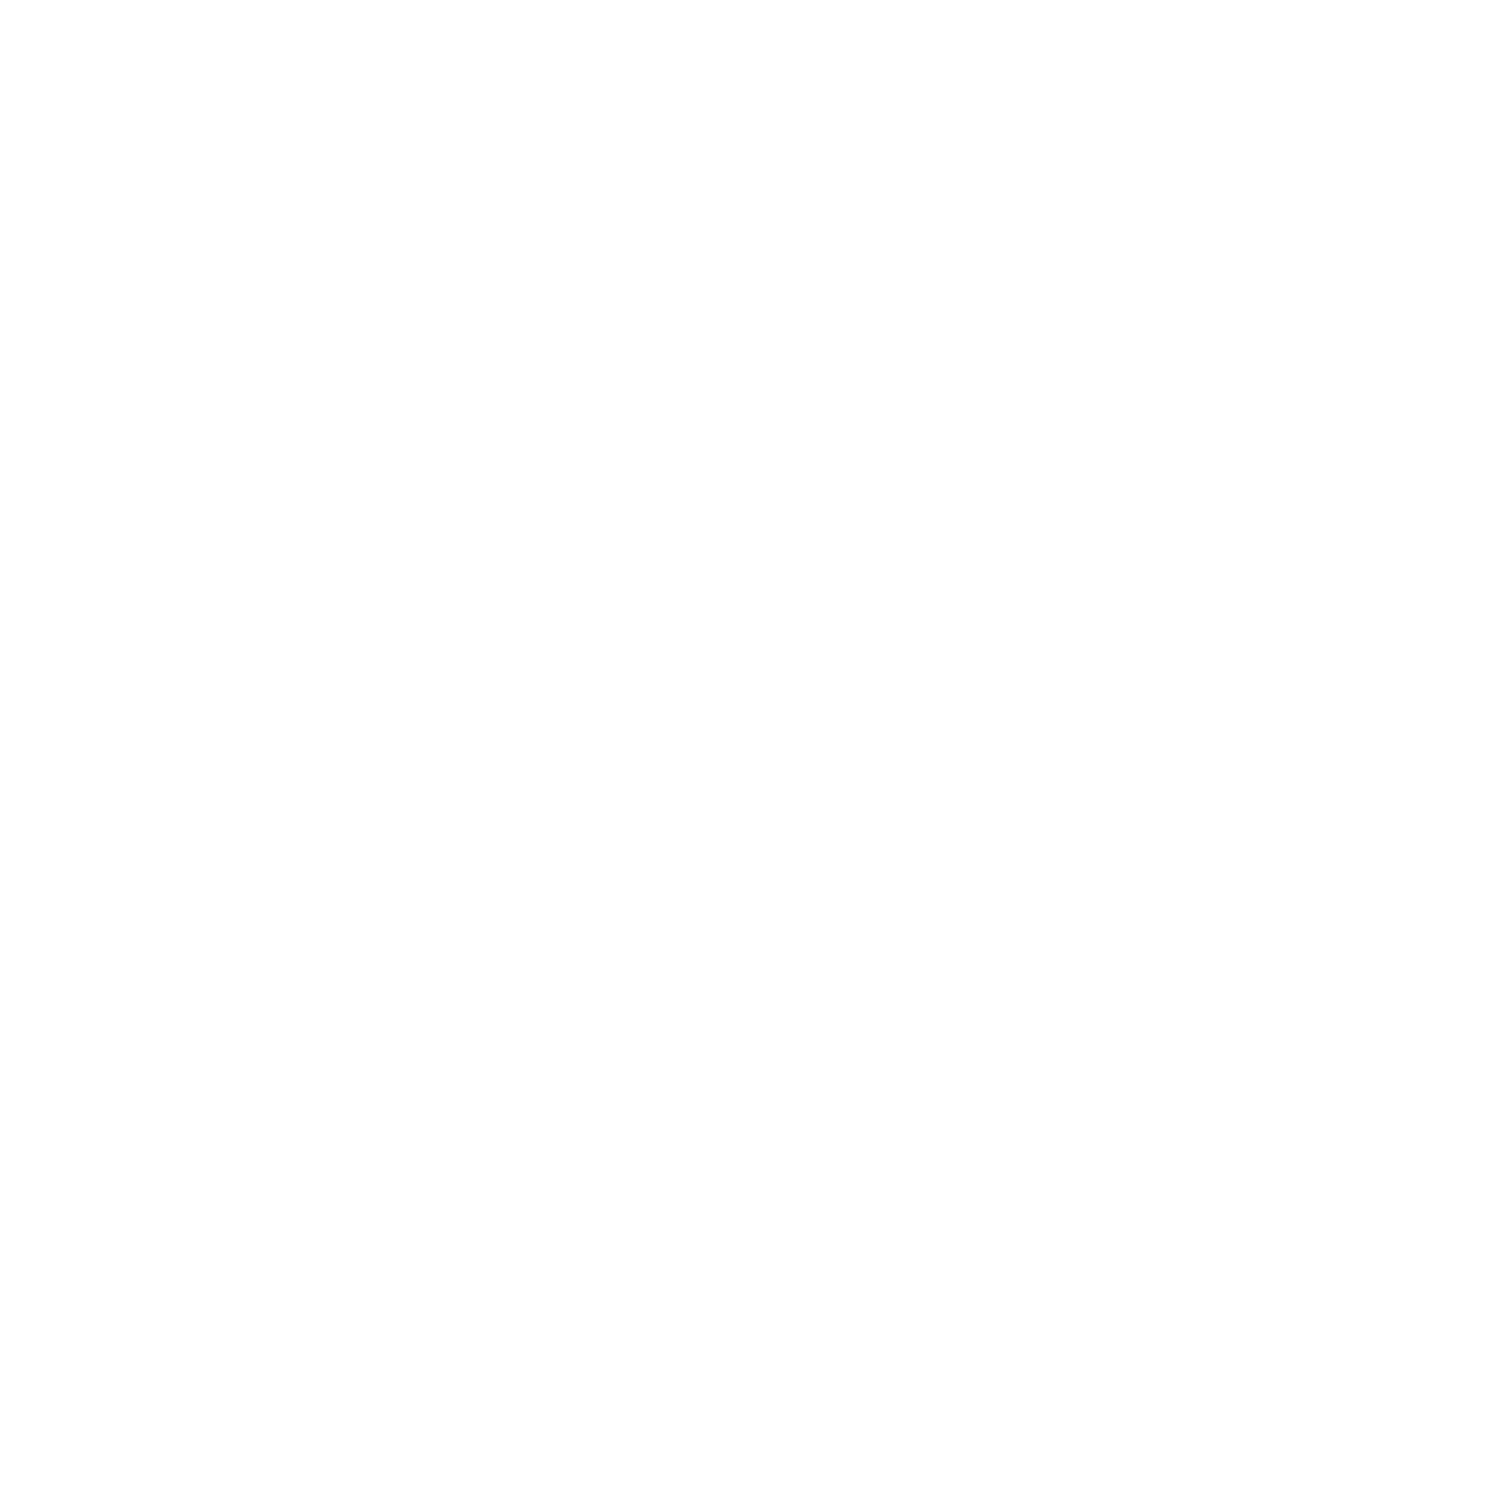 Wildthing Flyfishing